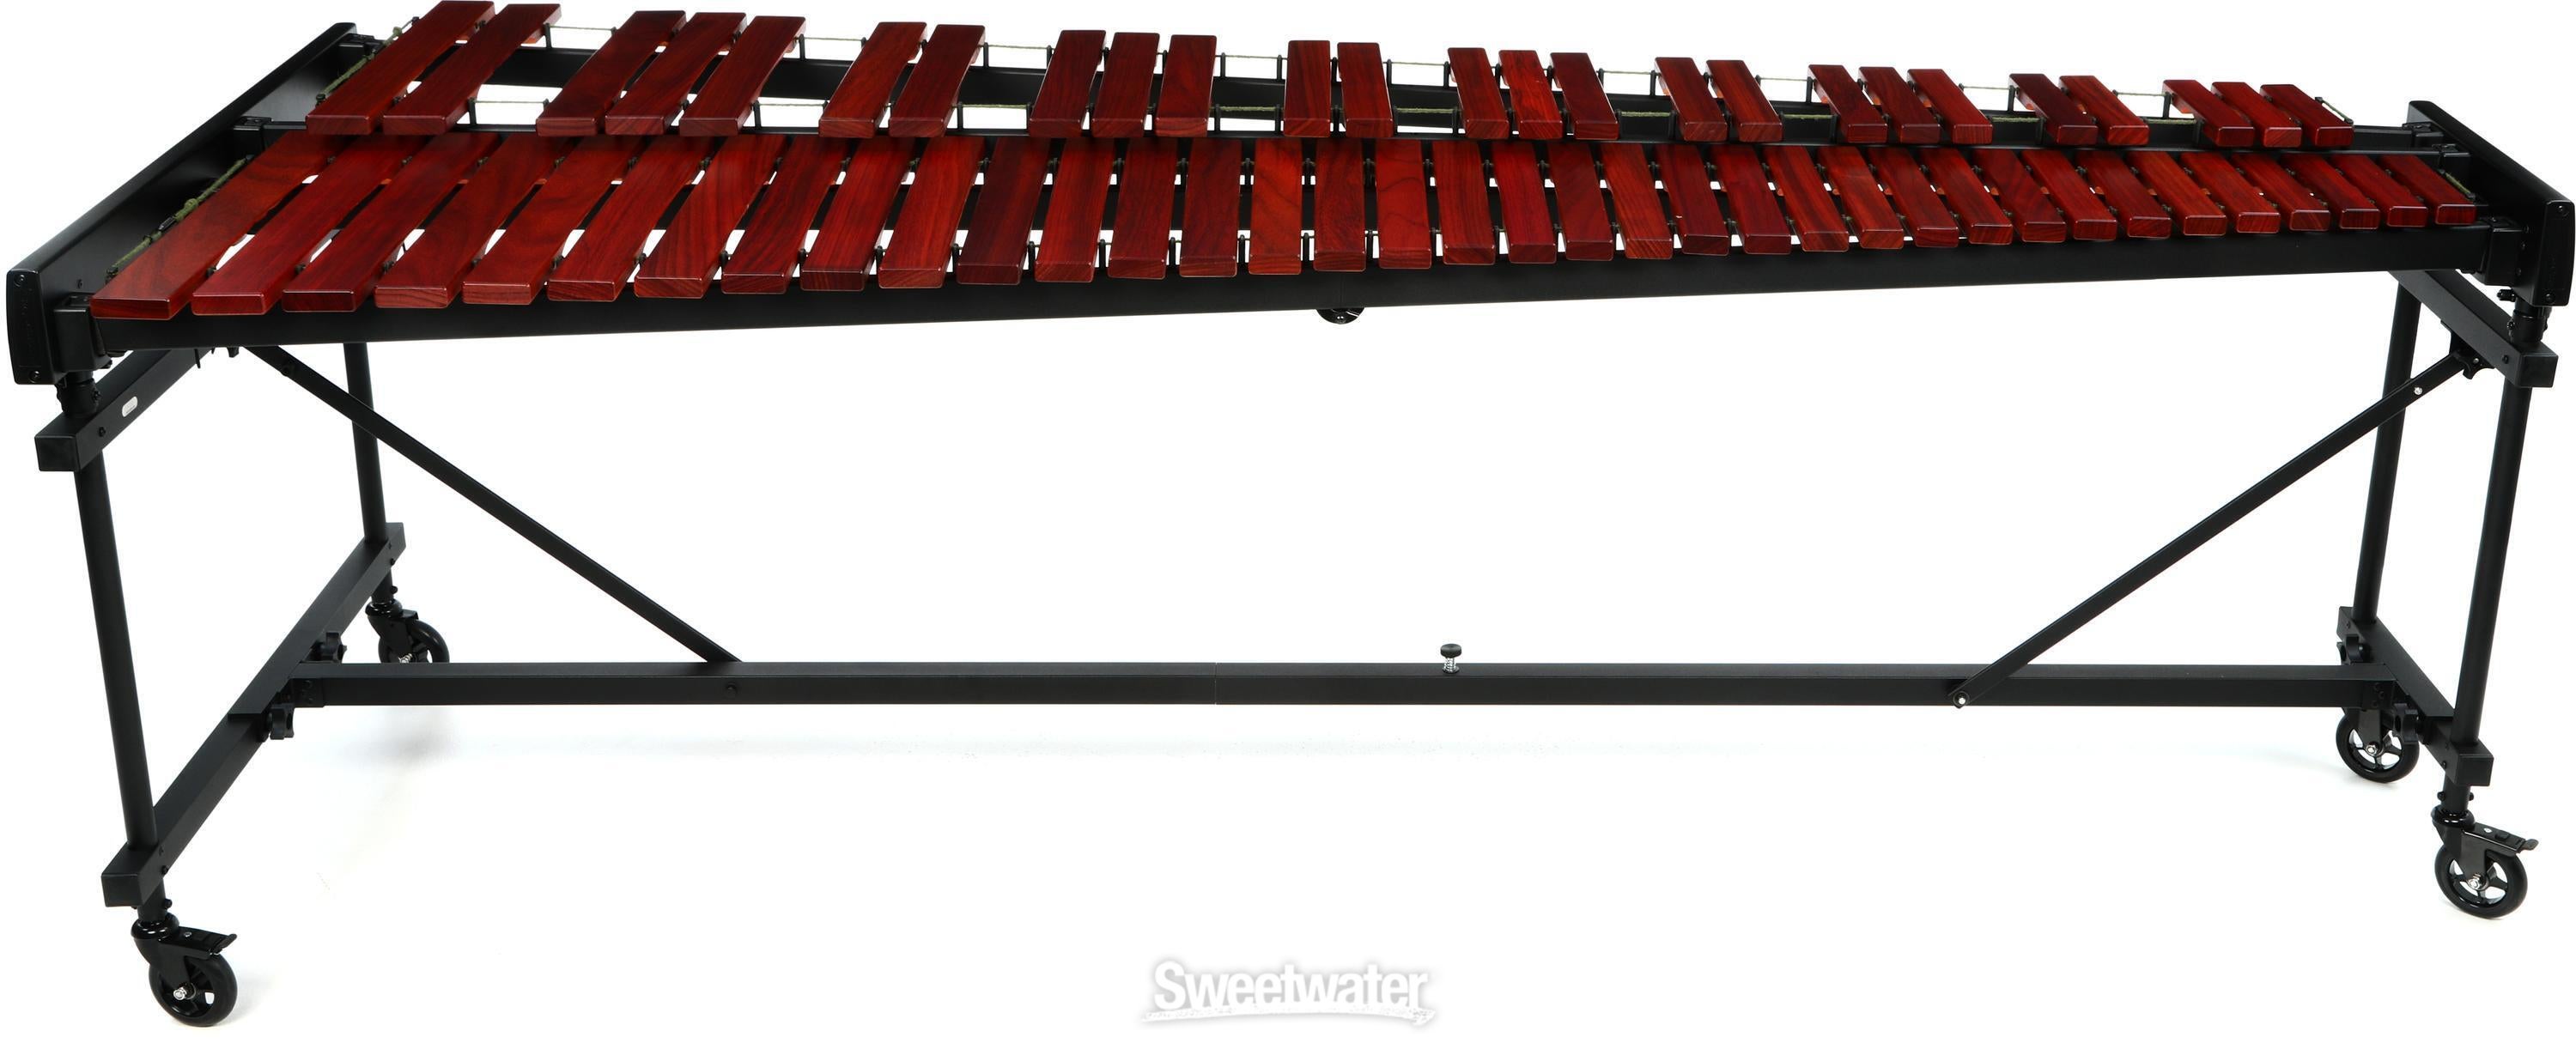 Marimba One 5.0-octave Educational Marimba | Sweetwater